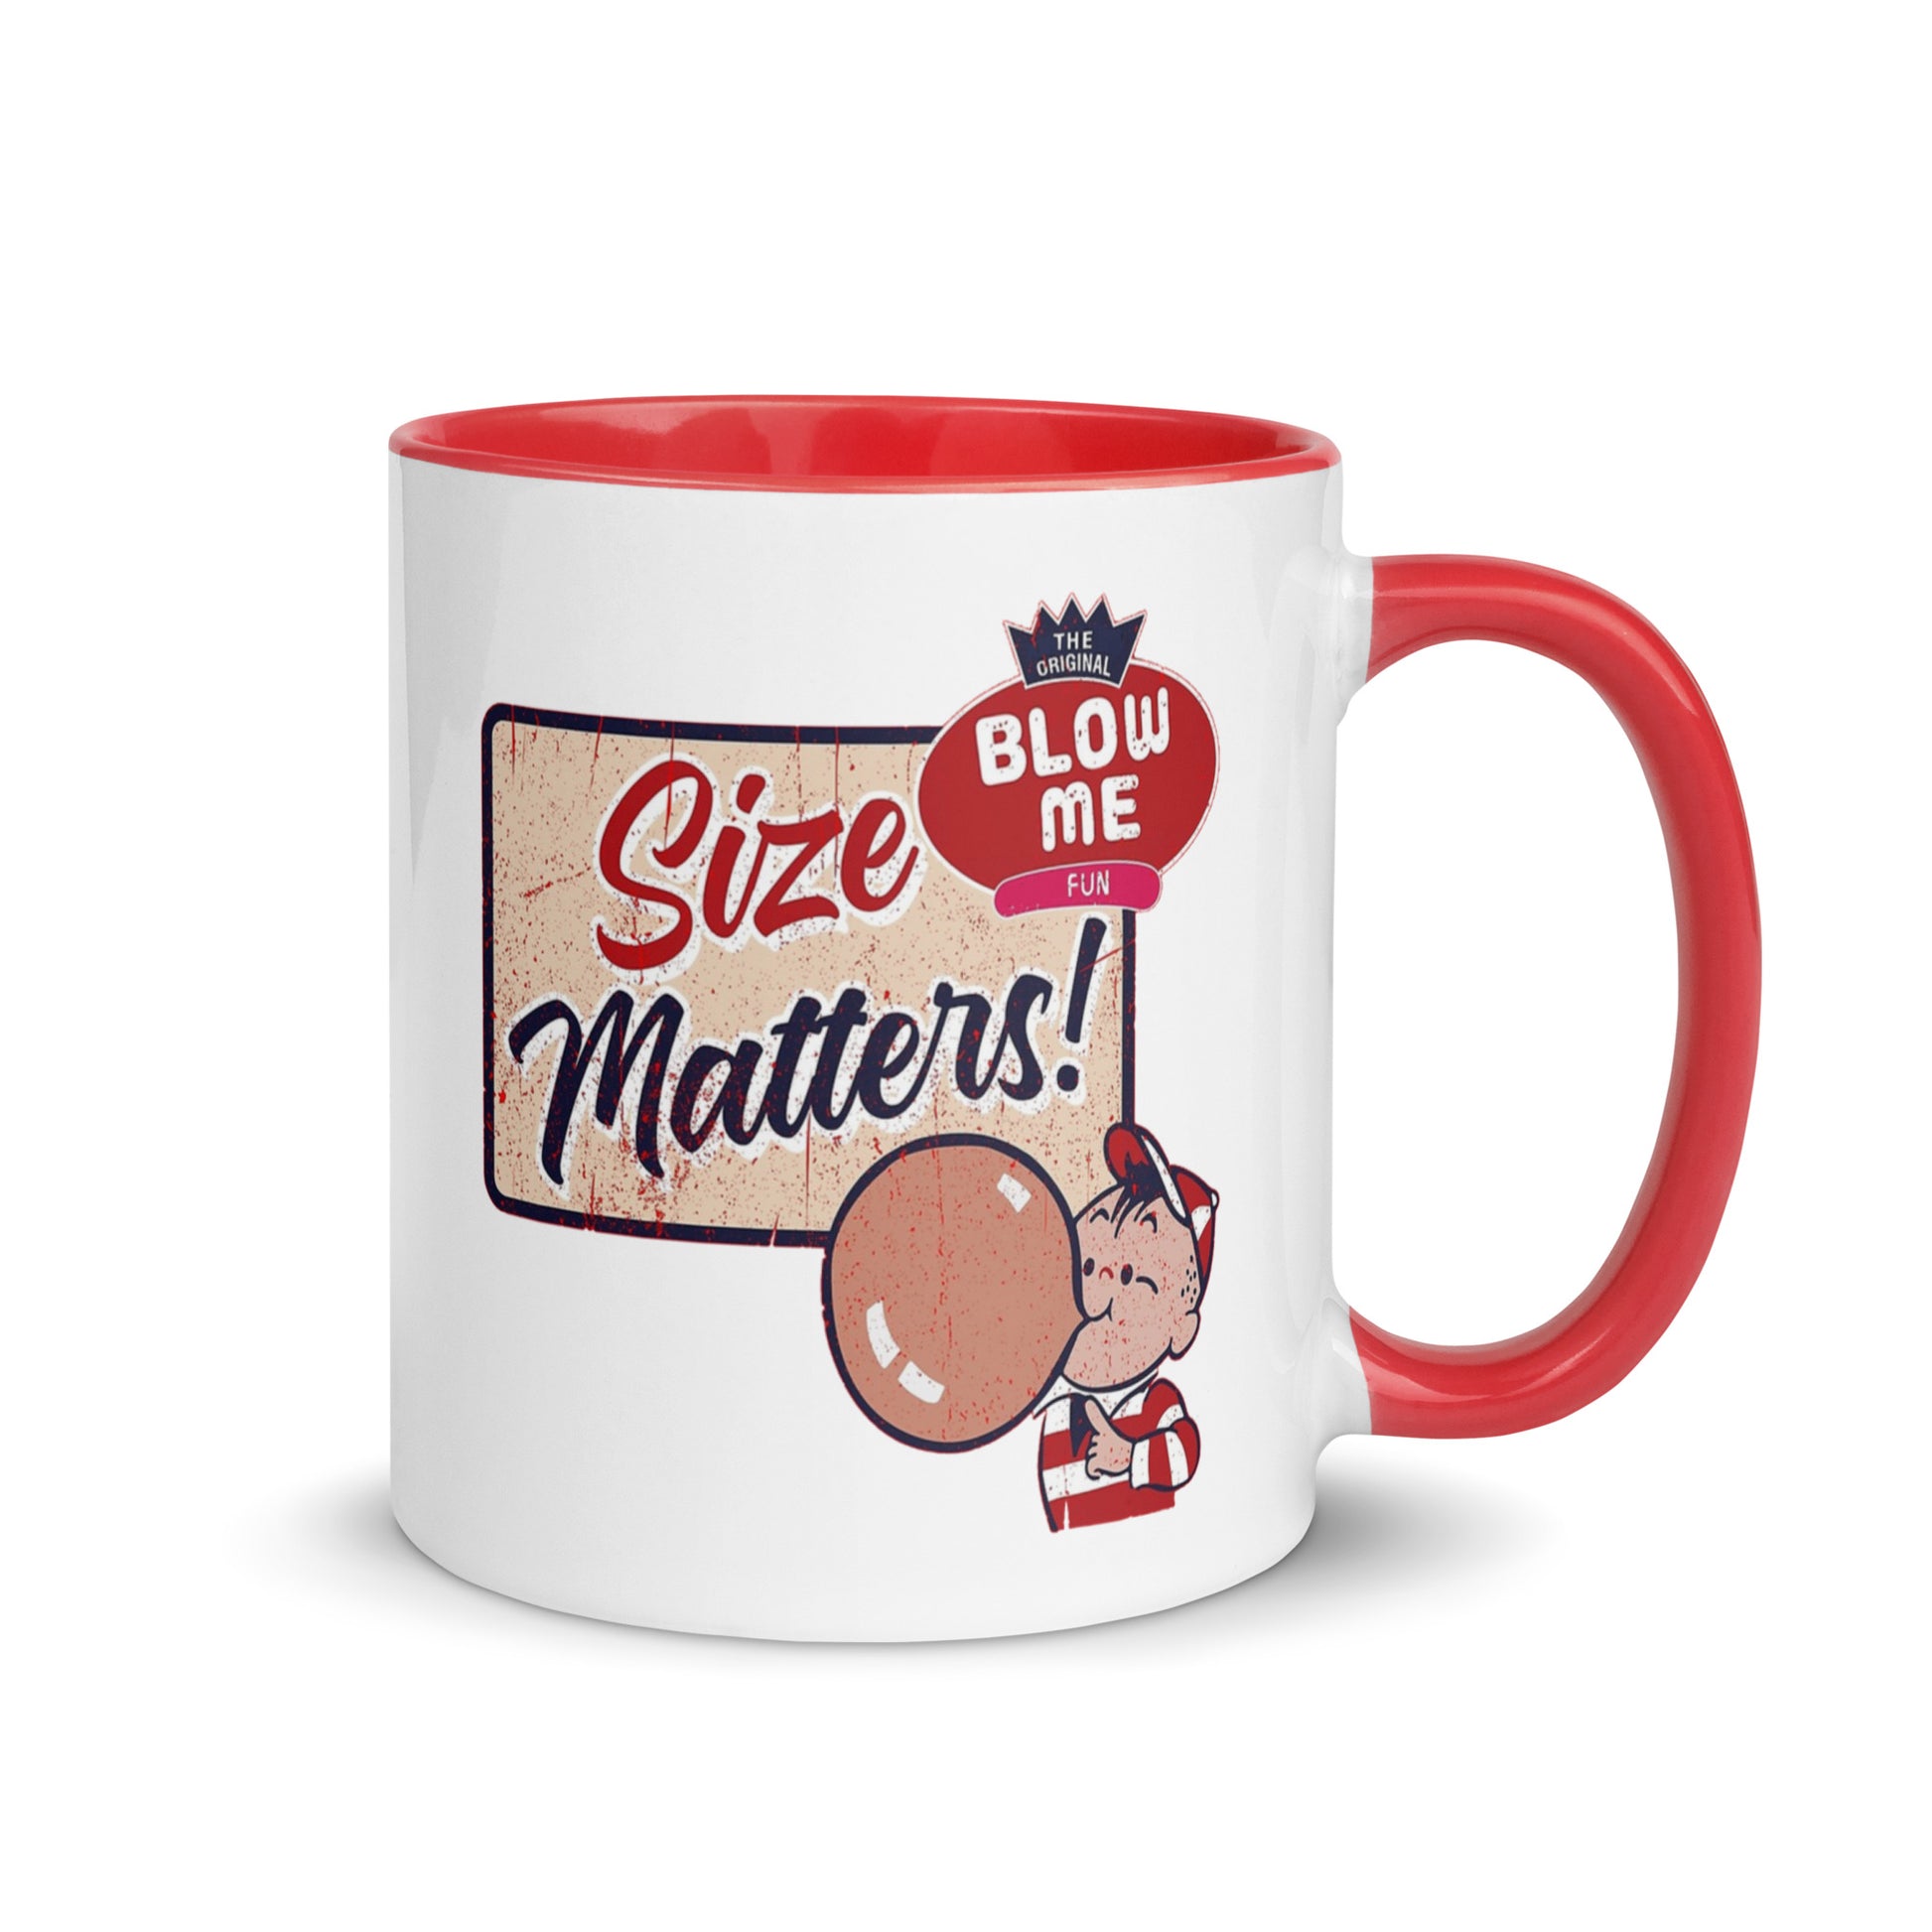 Size Matters-Coffee Mug